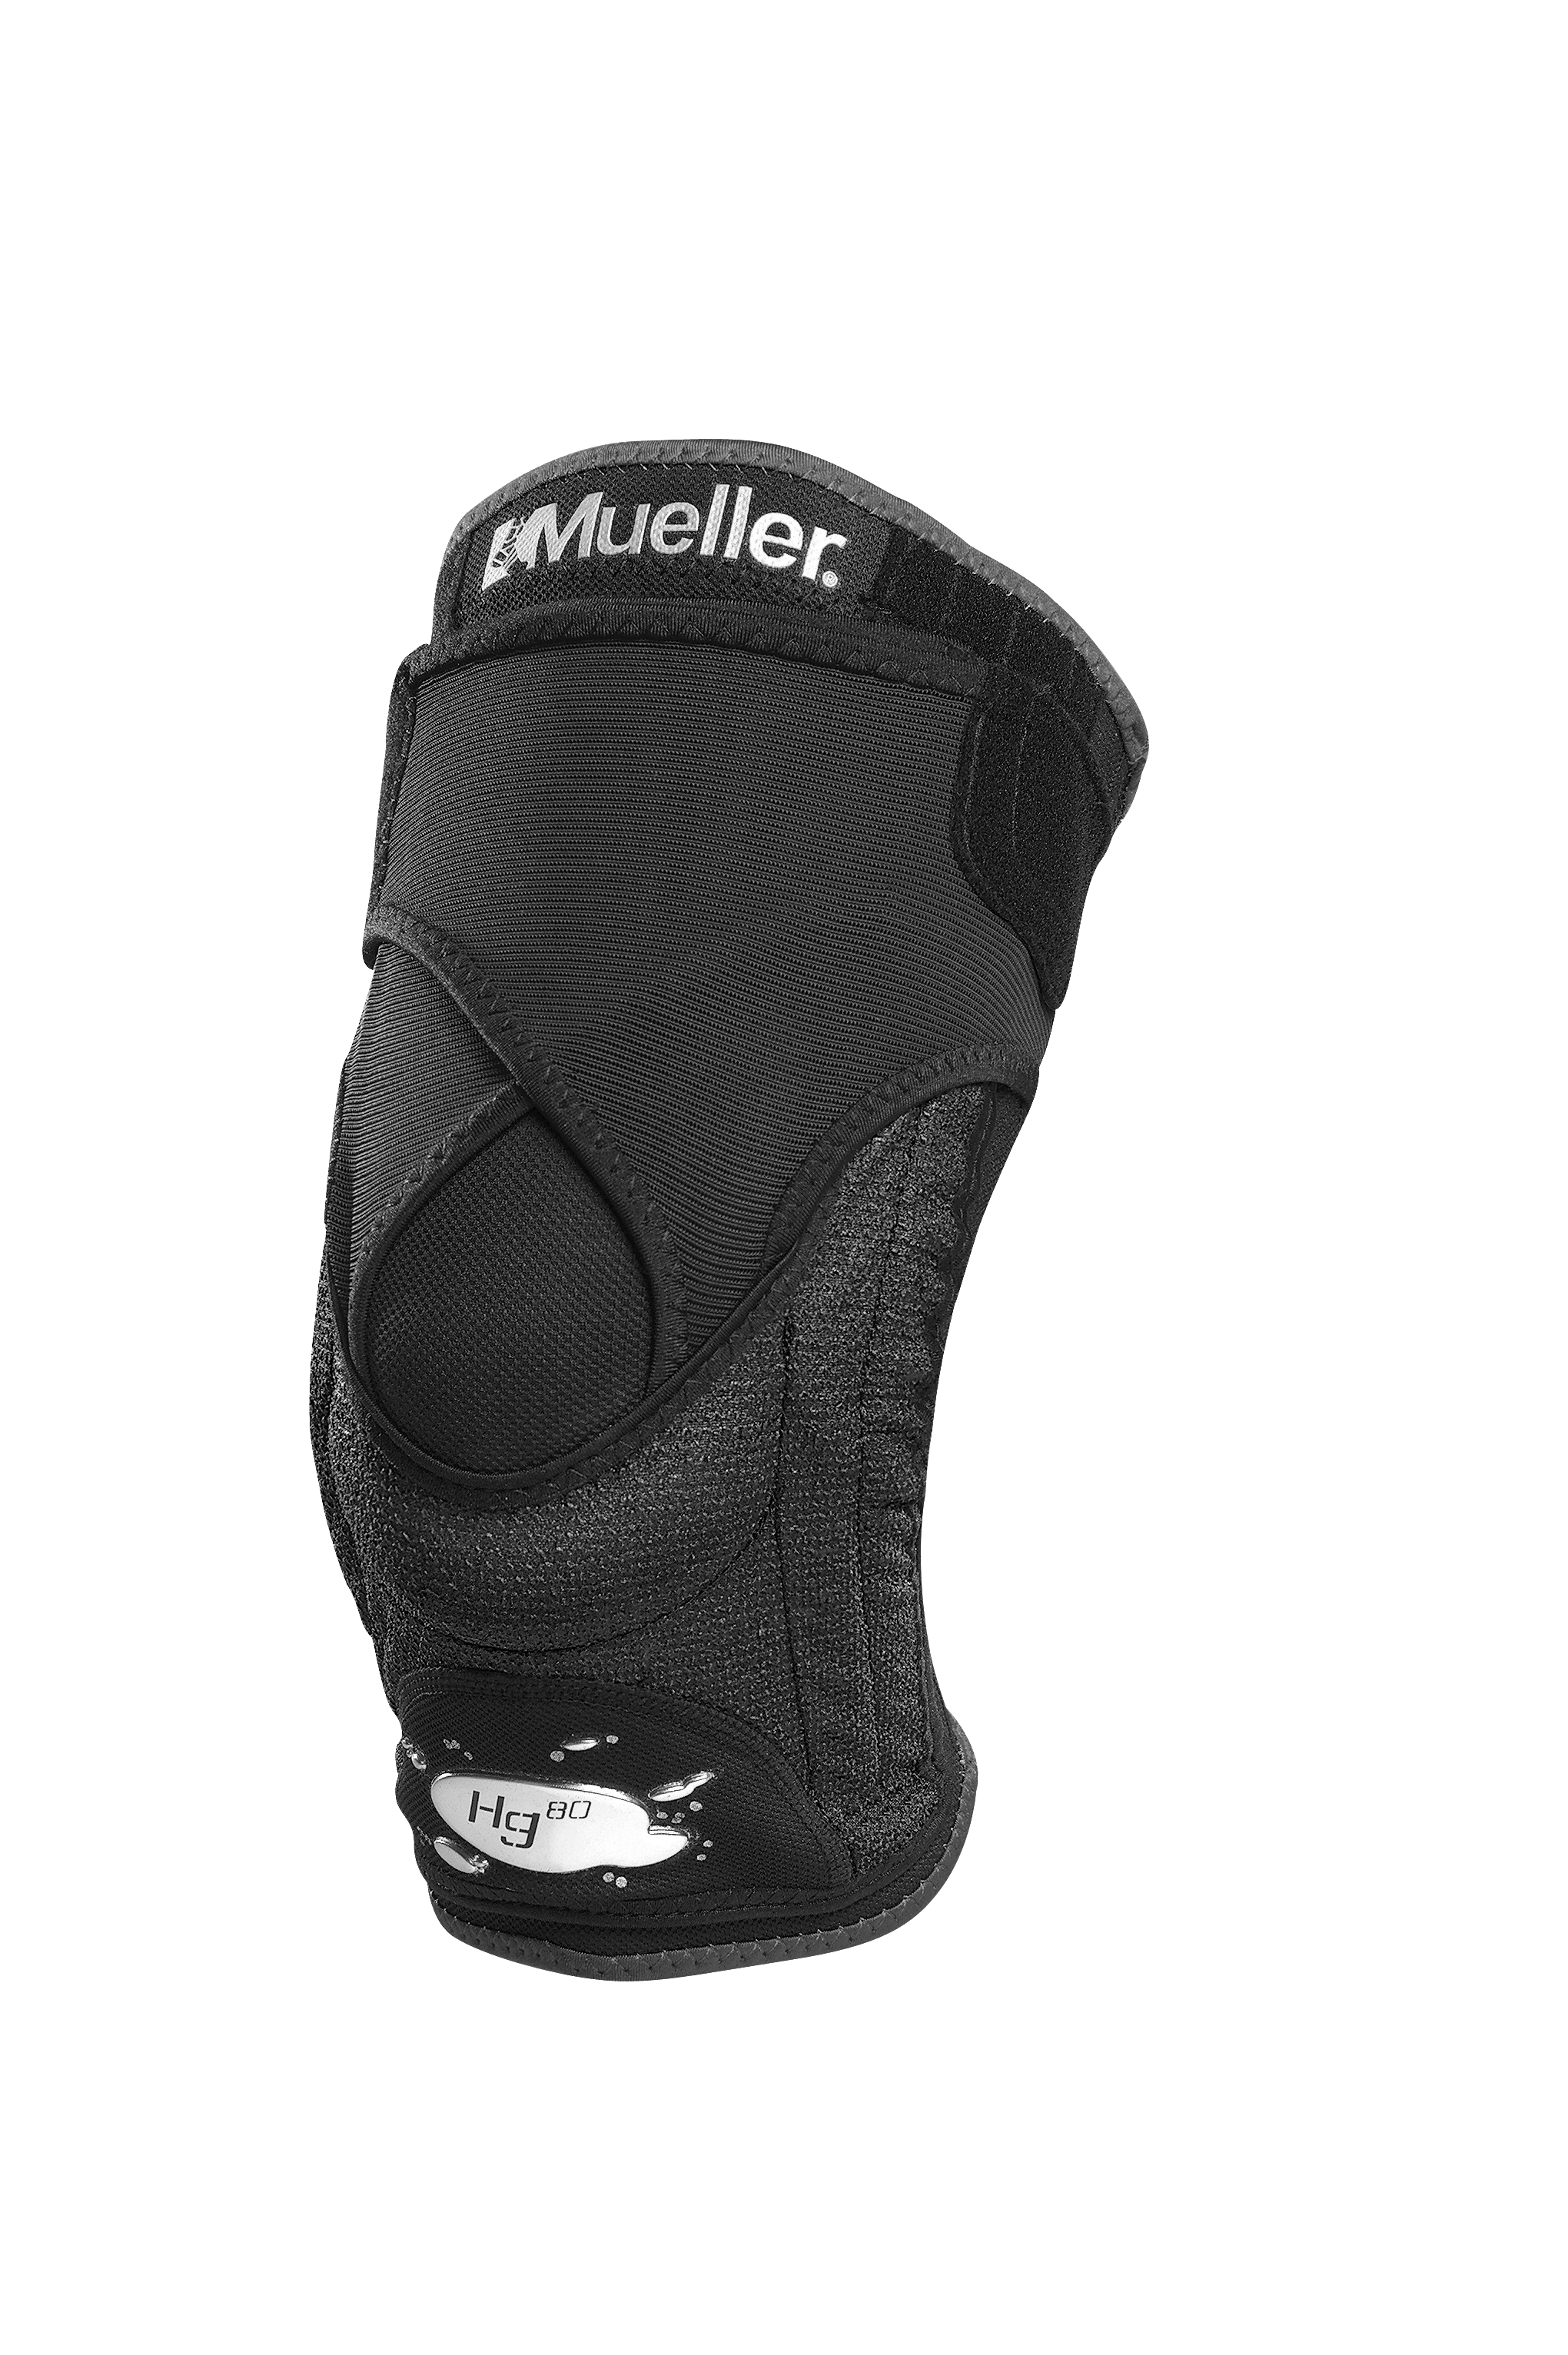 Mueller Hg80 Knee Brace with Kevlar 5436 Produkt Heroshot